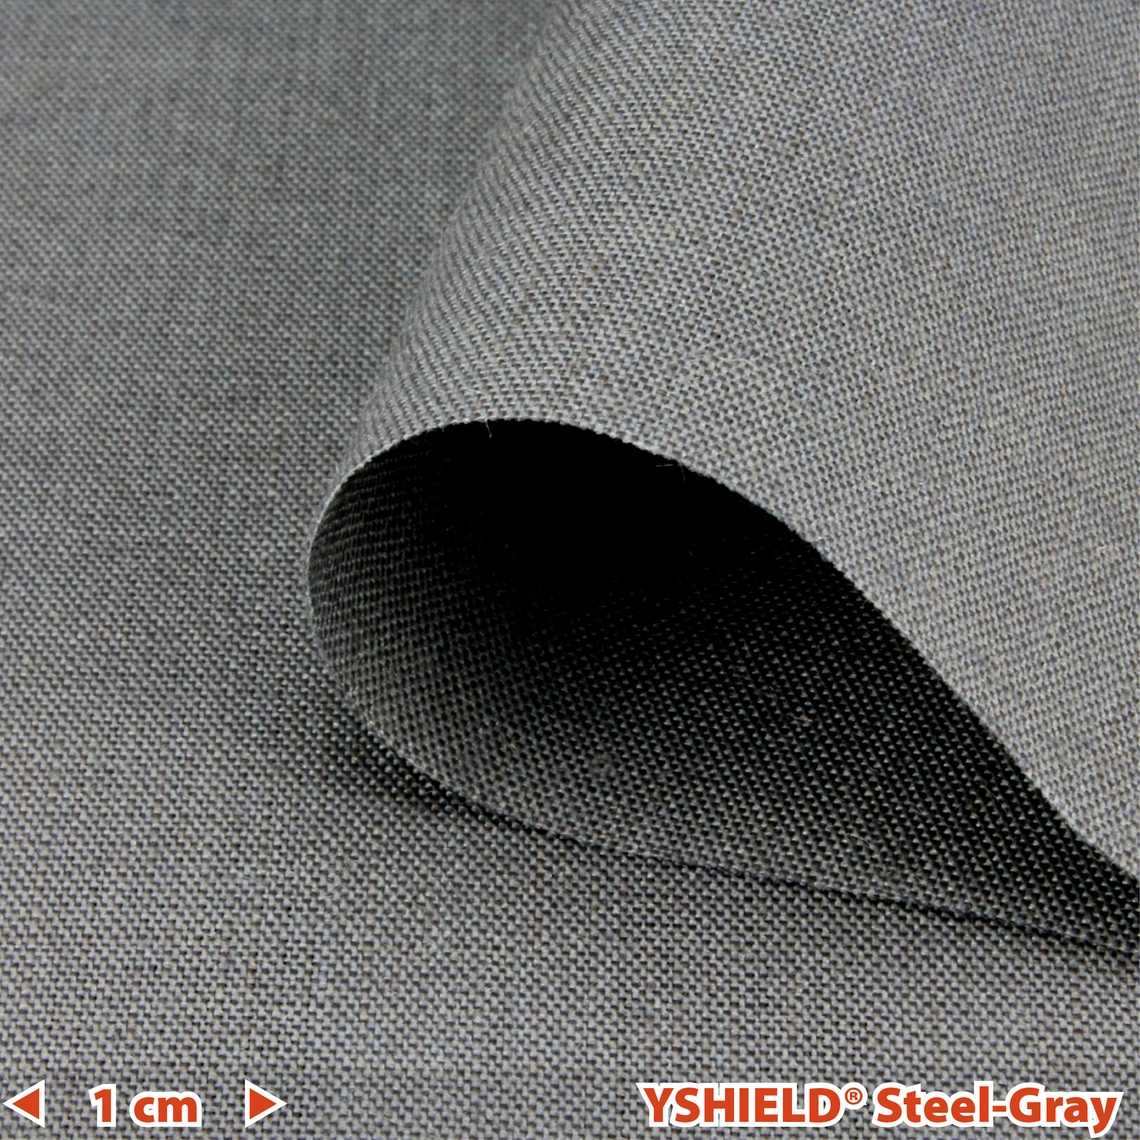 YSHIELD® STEEL-GRAY | Shielding fabric | Width 150 cm | 1 meter